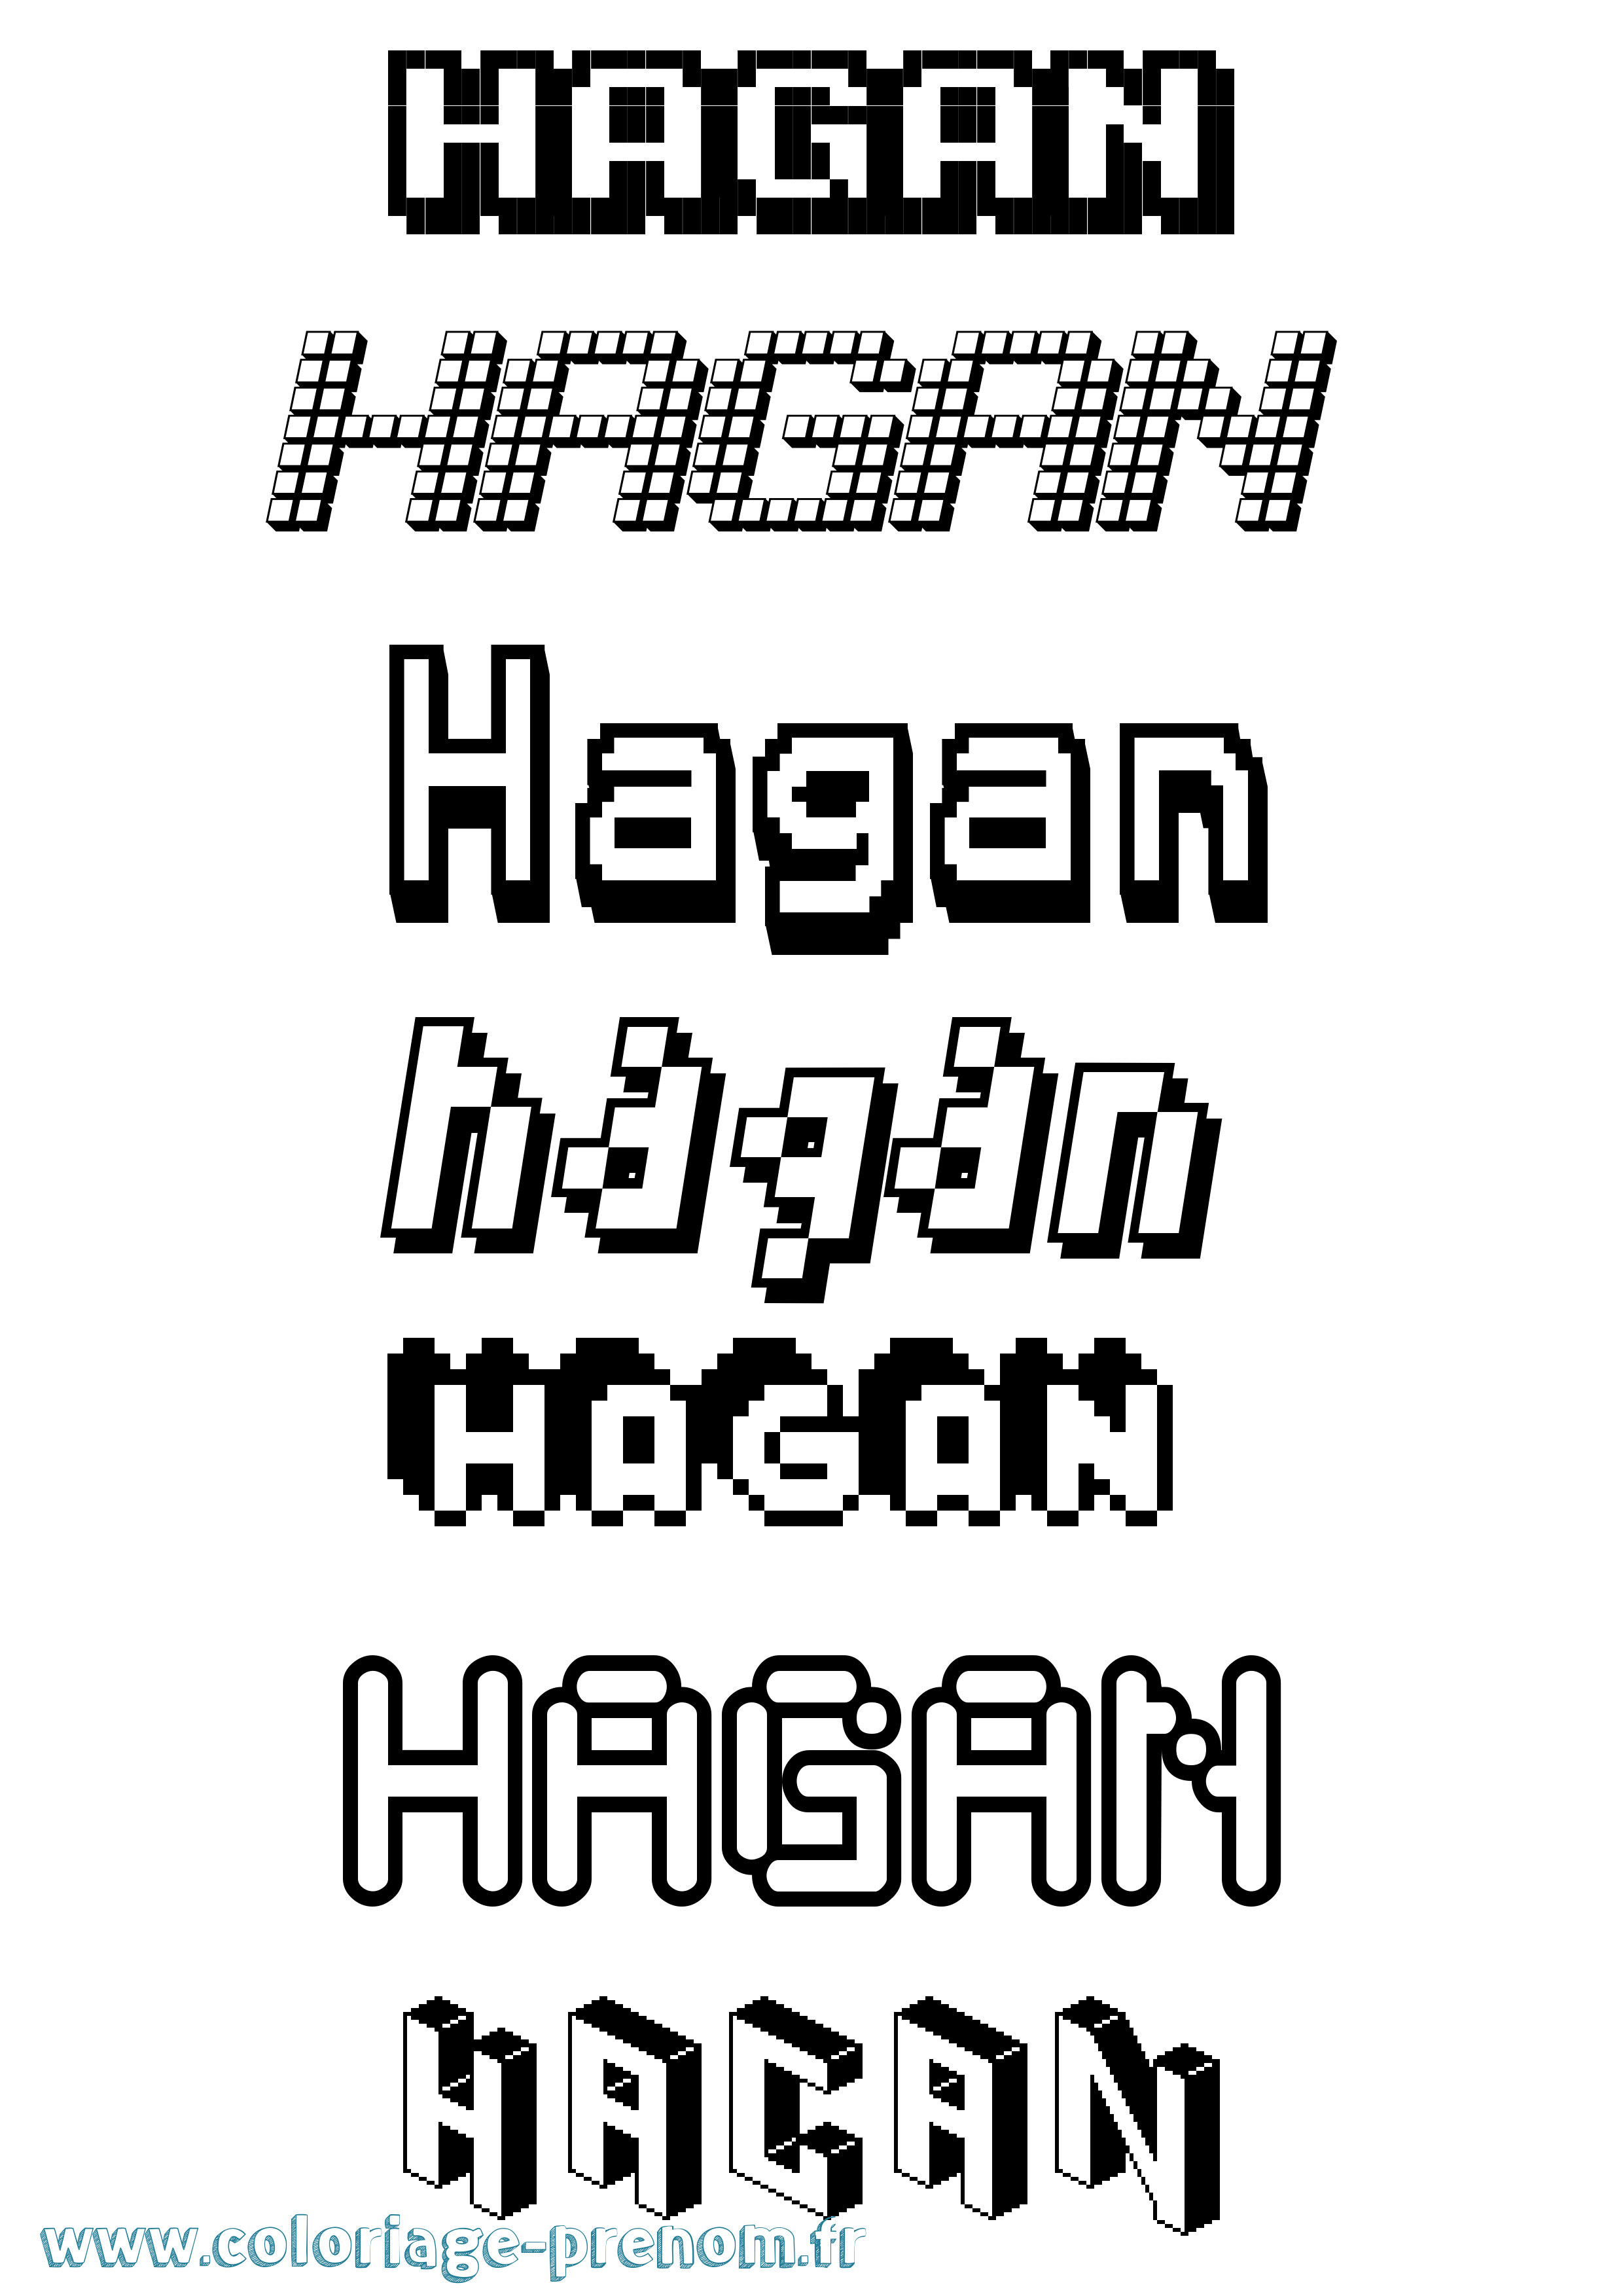 Coloriage prénom Hagan Pixel